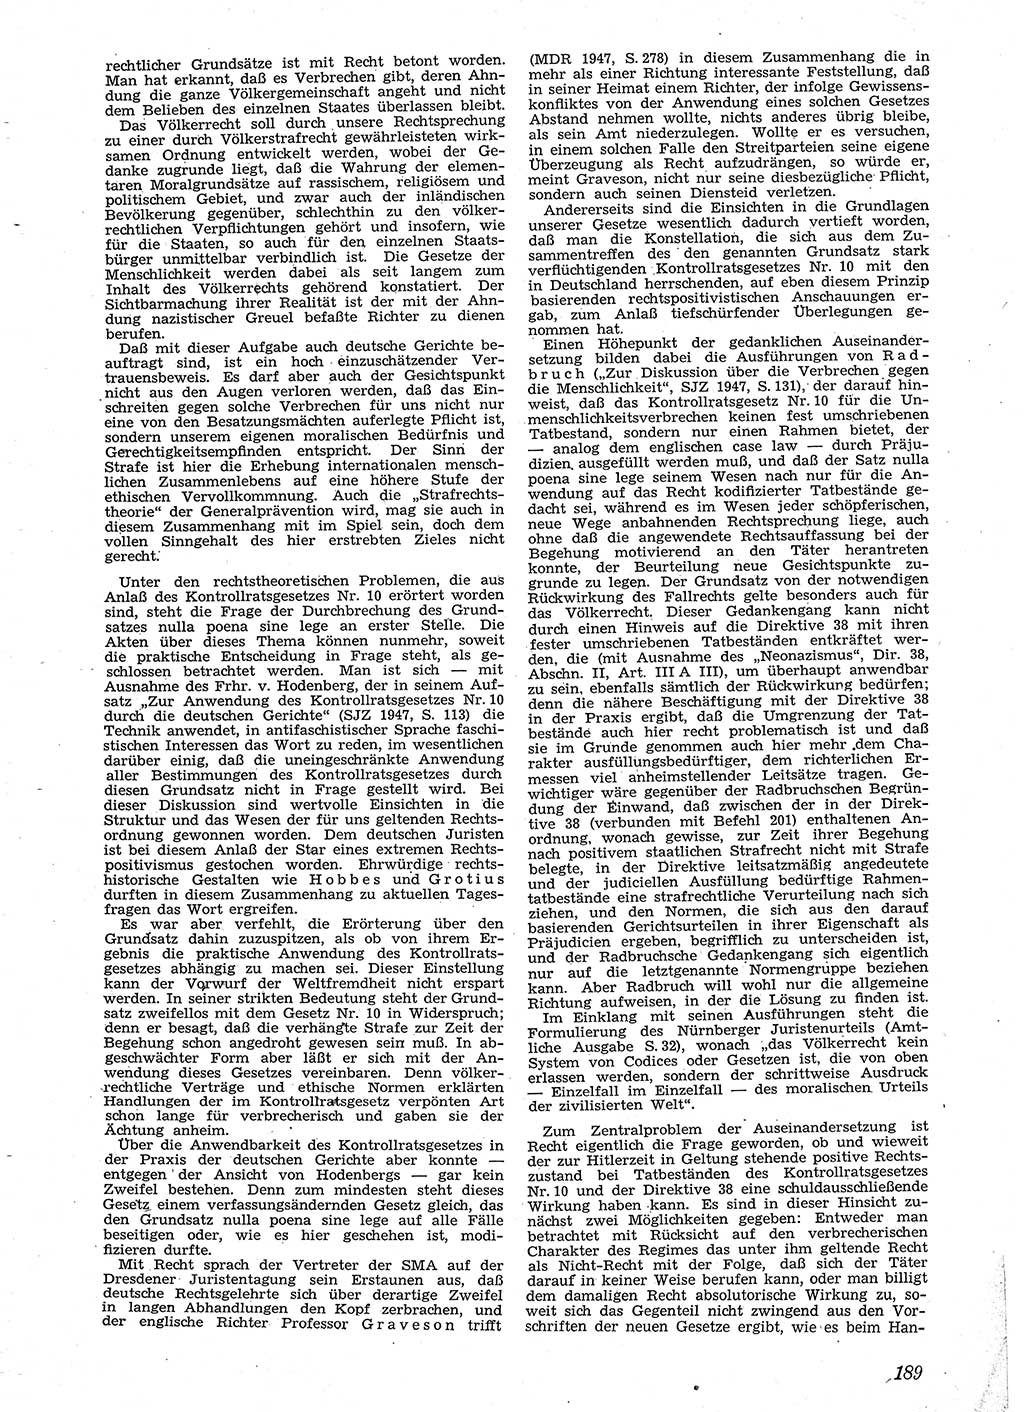 Neue Justiz (NJ), Zeitschrift für Recht und Rechtswissenschaft [Sowjetische Besatzungszone (SBZ) Deutschland], 2. Jahrgang 1948, Seite 189 (NJ SBZ Dtl. 1948, S. 189)